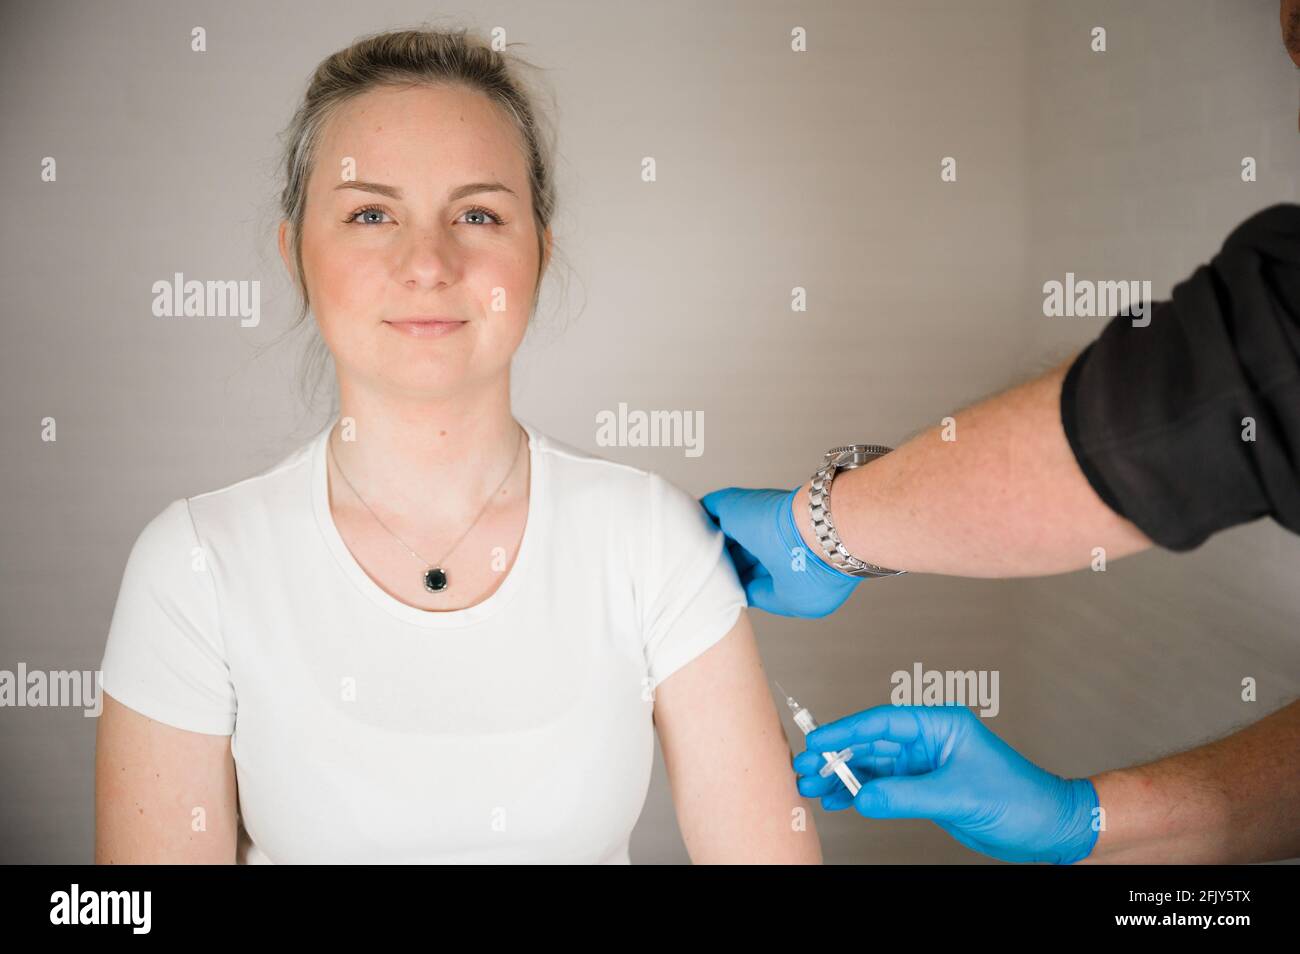 Medico che inietta il vaccino Covid in un braccio di pazienti: Curare la corona Pandemic con la vaccinazione di massa Foto Stock